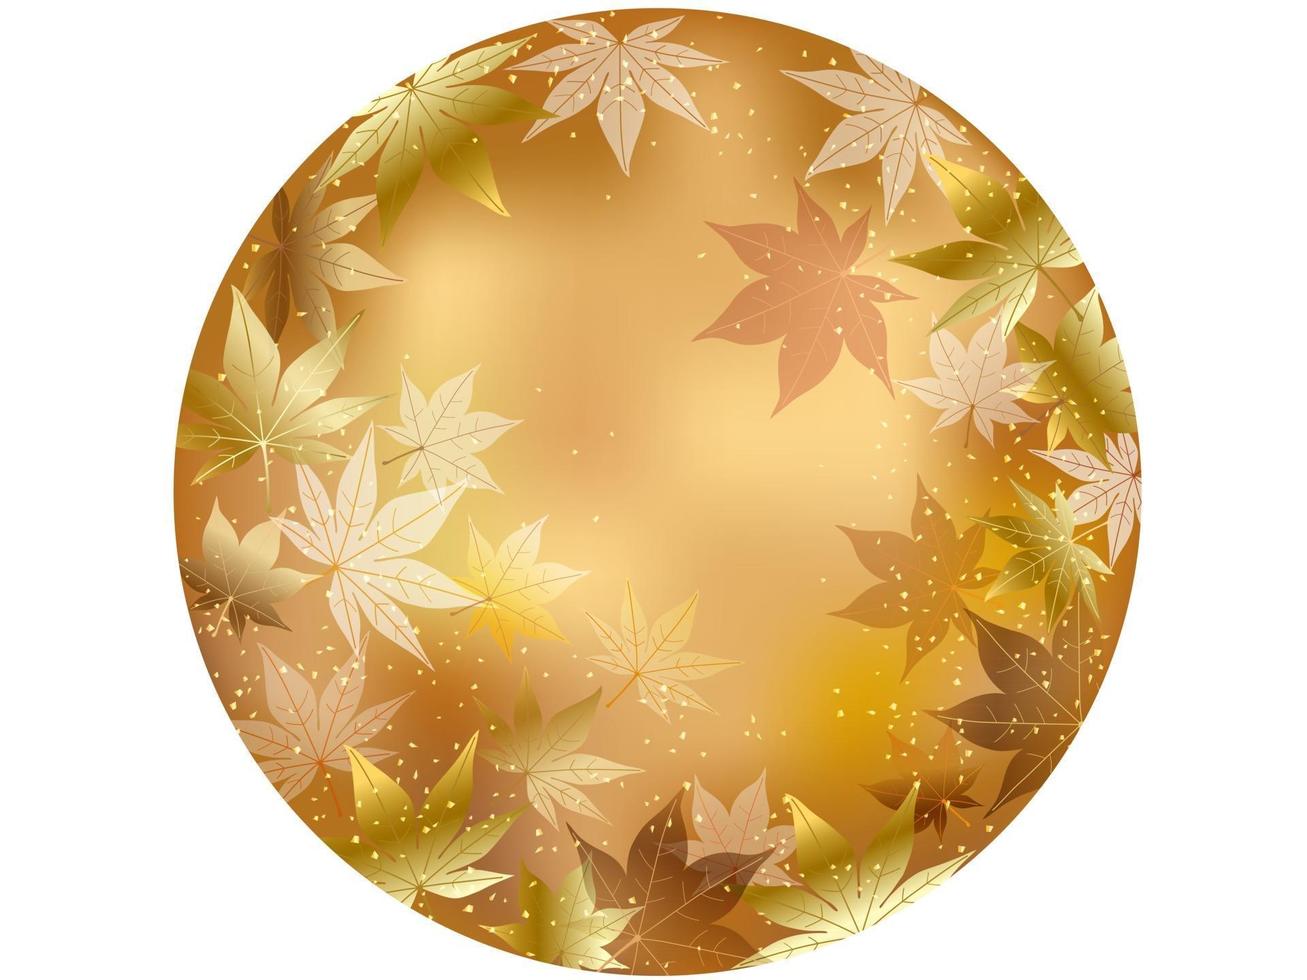 Gold Herbst Ahornblatt Vektor runden Hintergrund isoliert auf weißem Hintergrund.